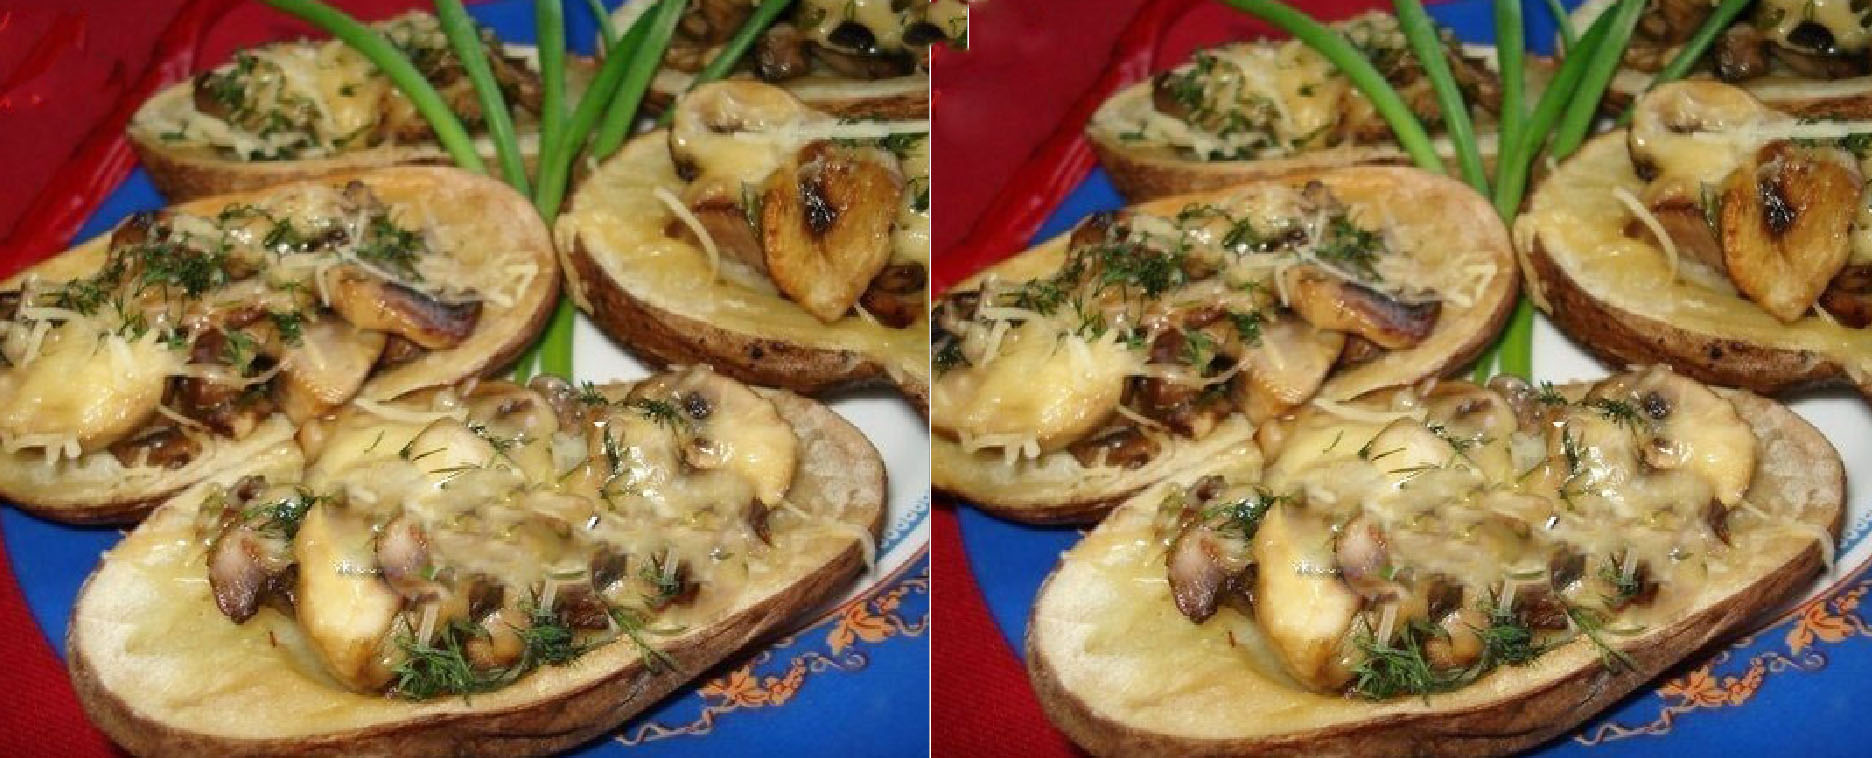 Картофель запеченный с грибами и сыром